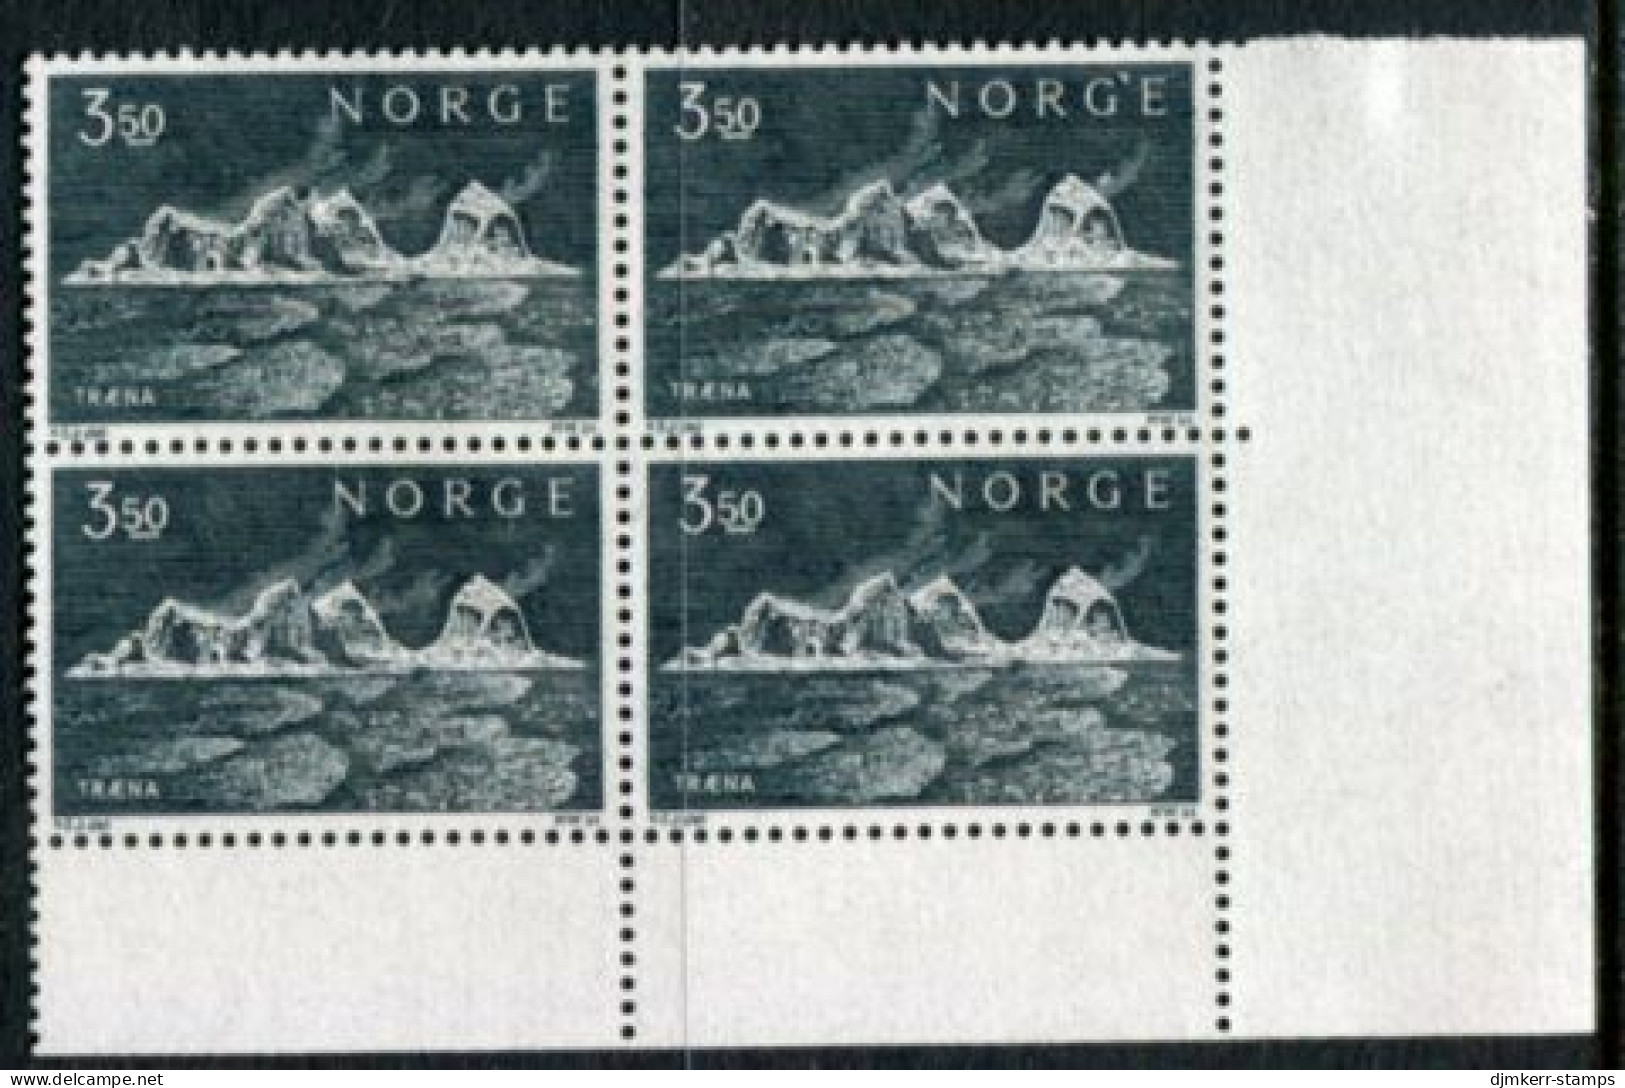 NORWAY 1969 Traena Islands Block Of 4 MNH / **.  Michel 587 - Ongebruikt